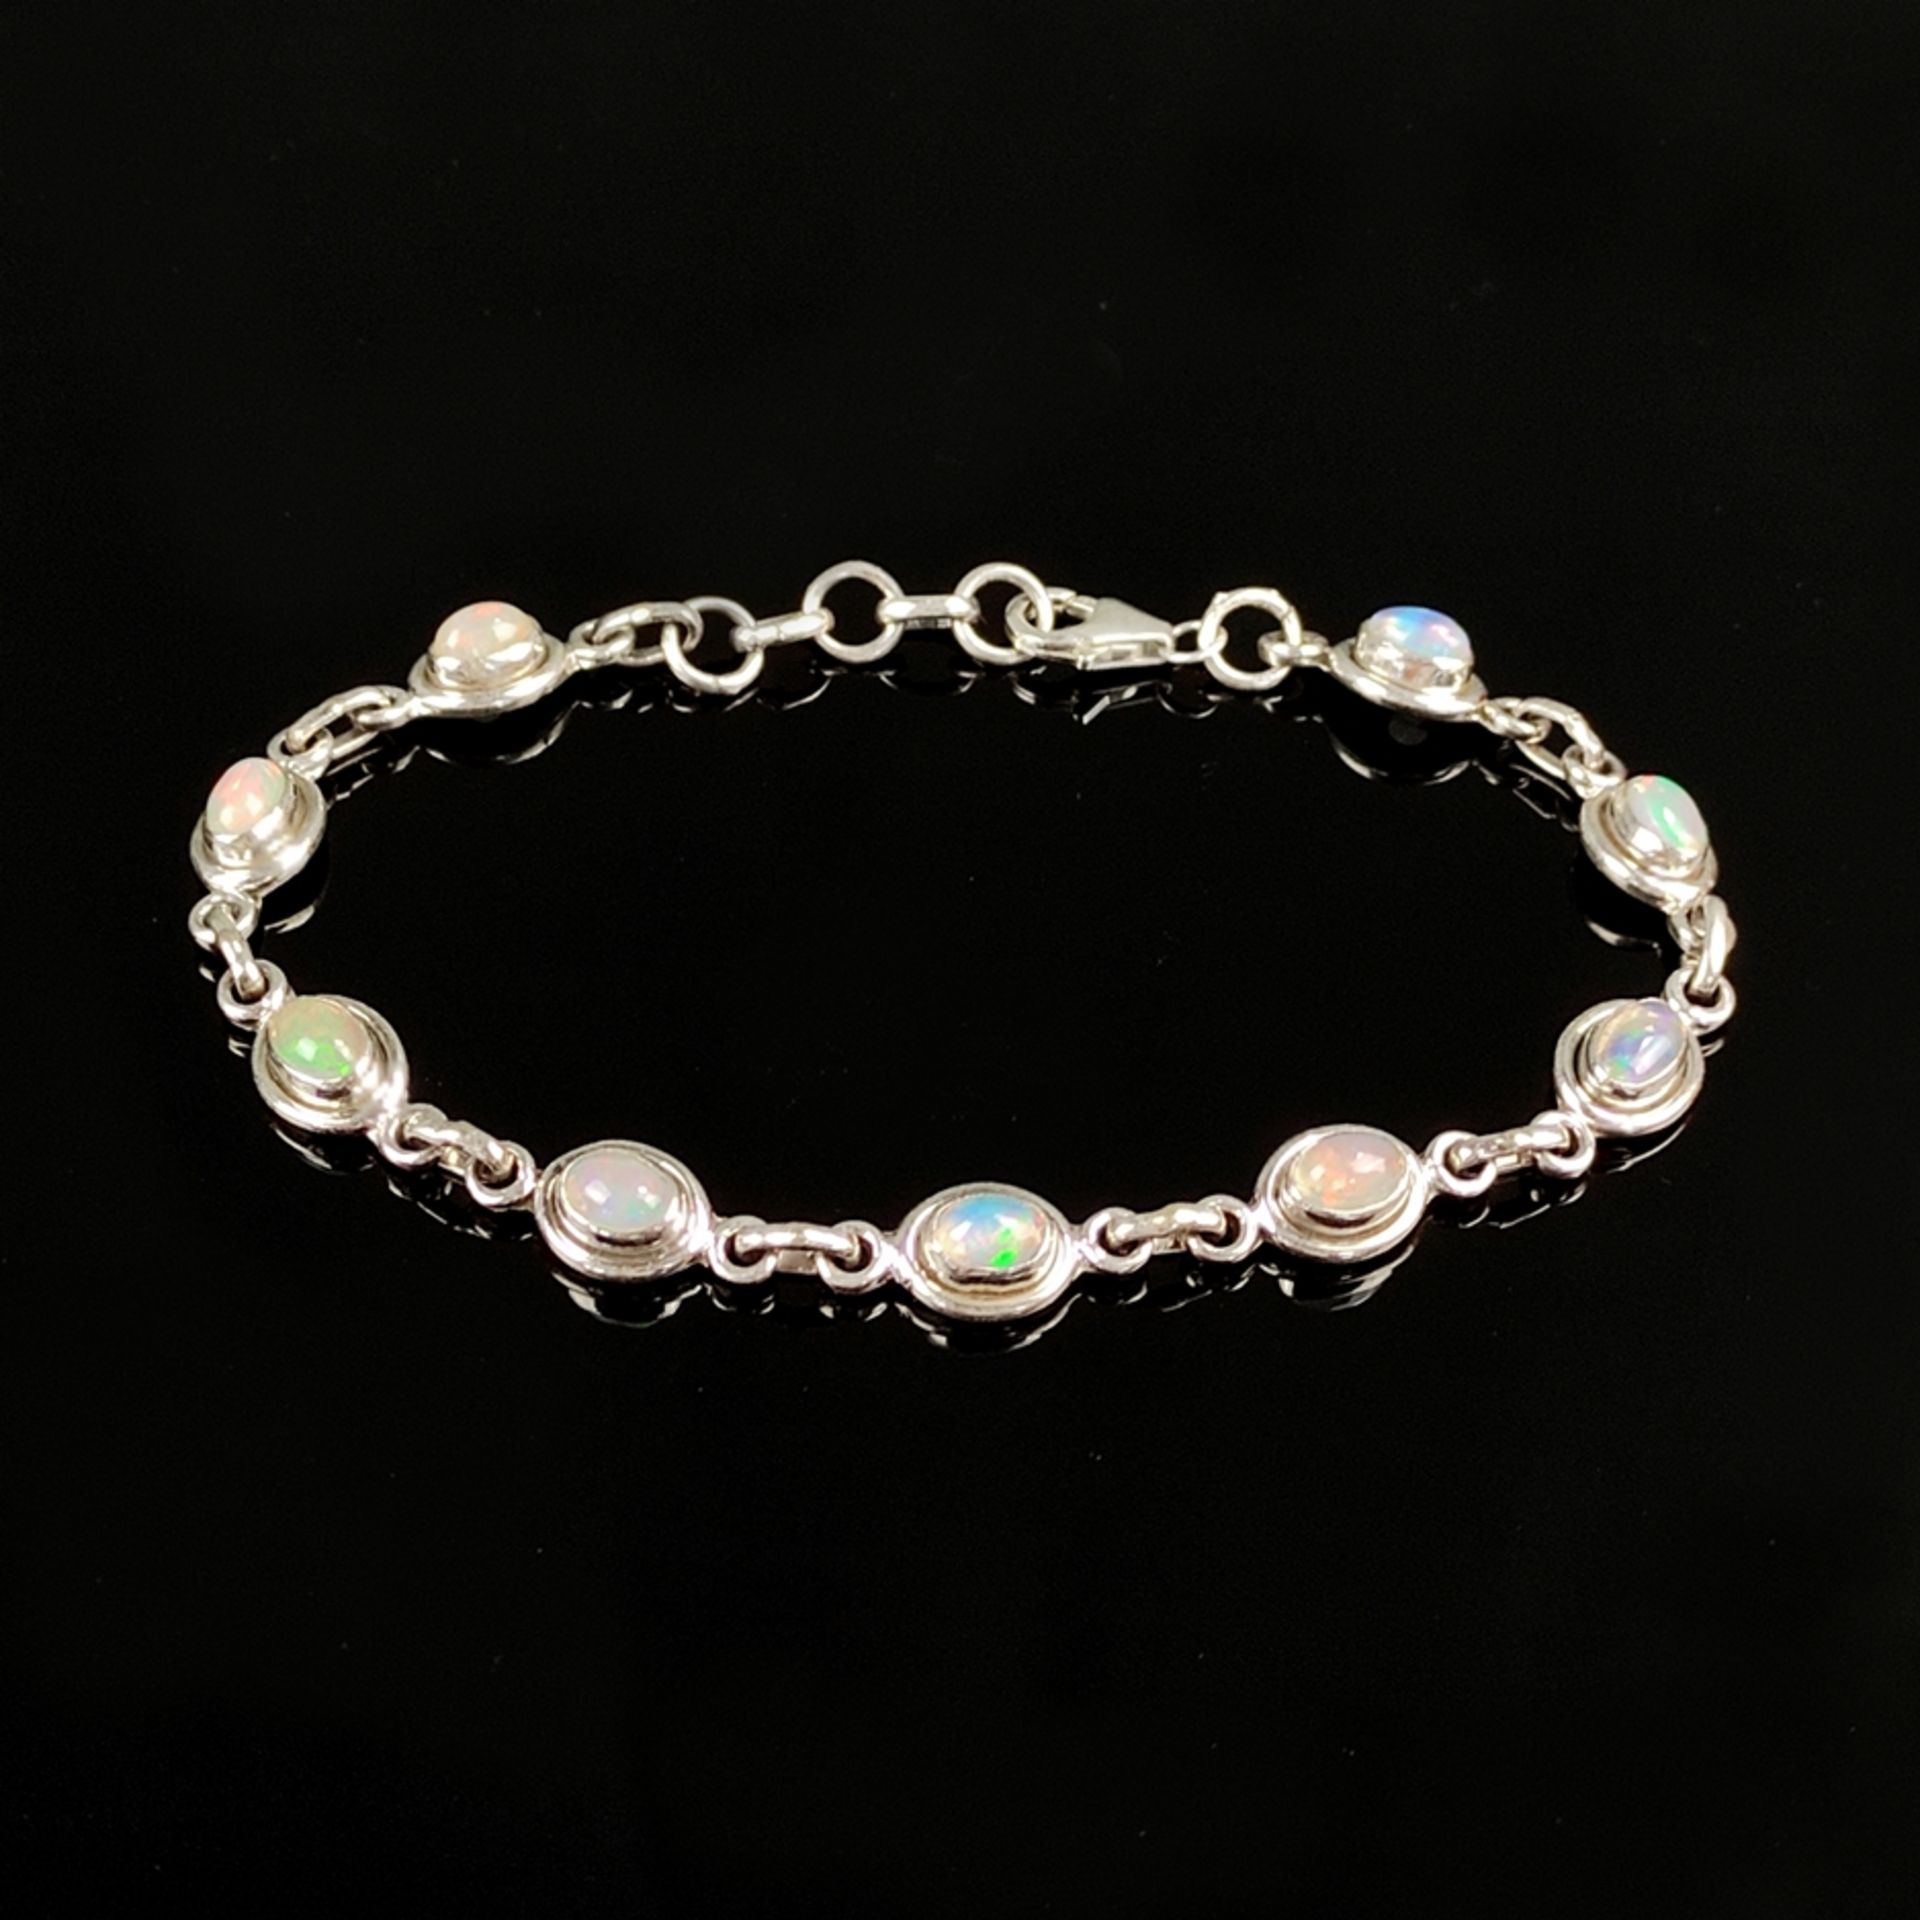 Voll-Opal-Armband, Silber 925, Gesamtgewicht 12g, Armband besetzt mit neun ovalen Vollopal-Cabochon